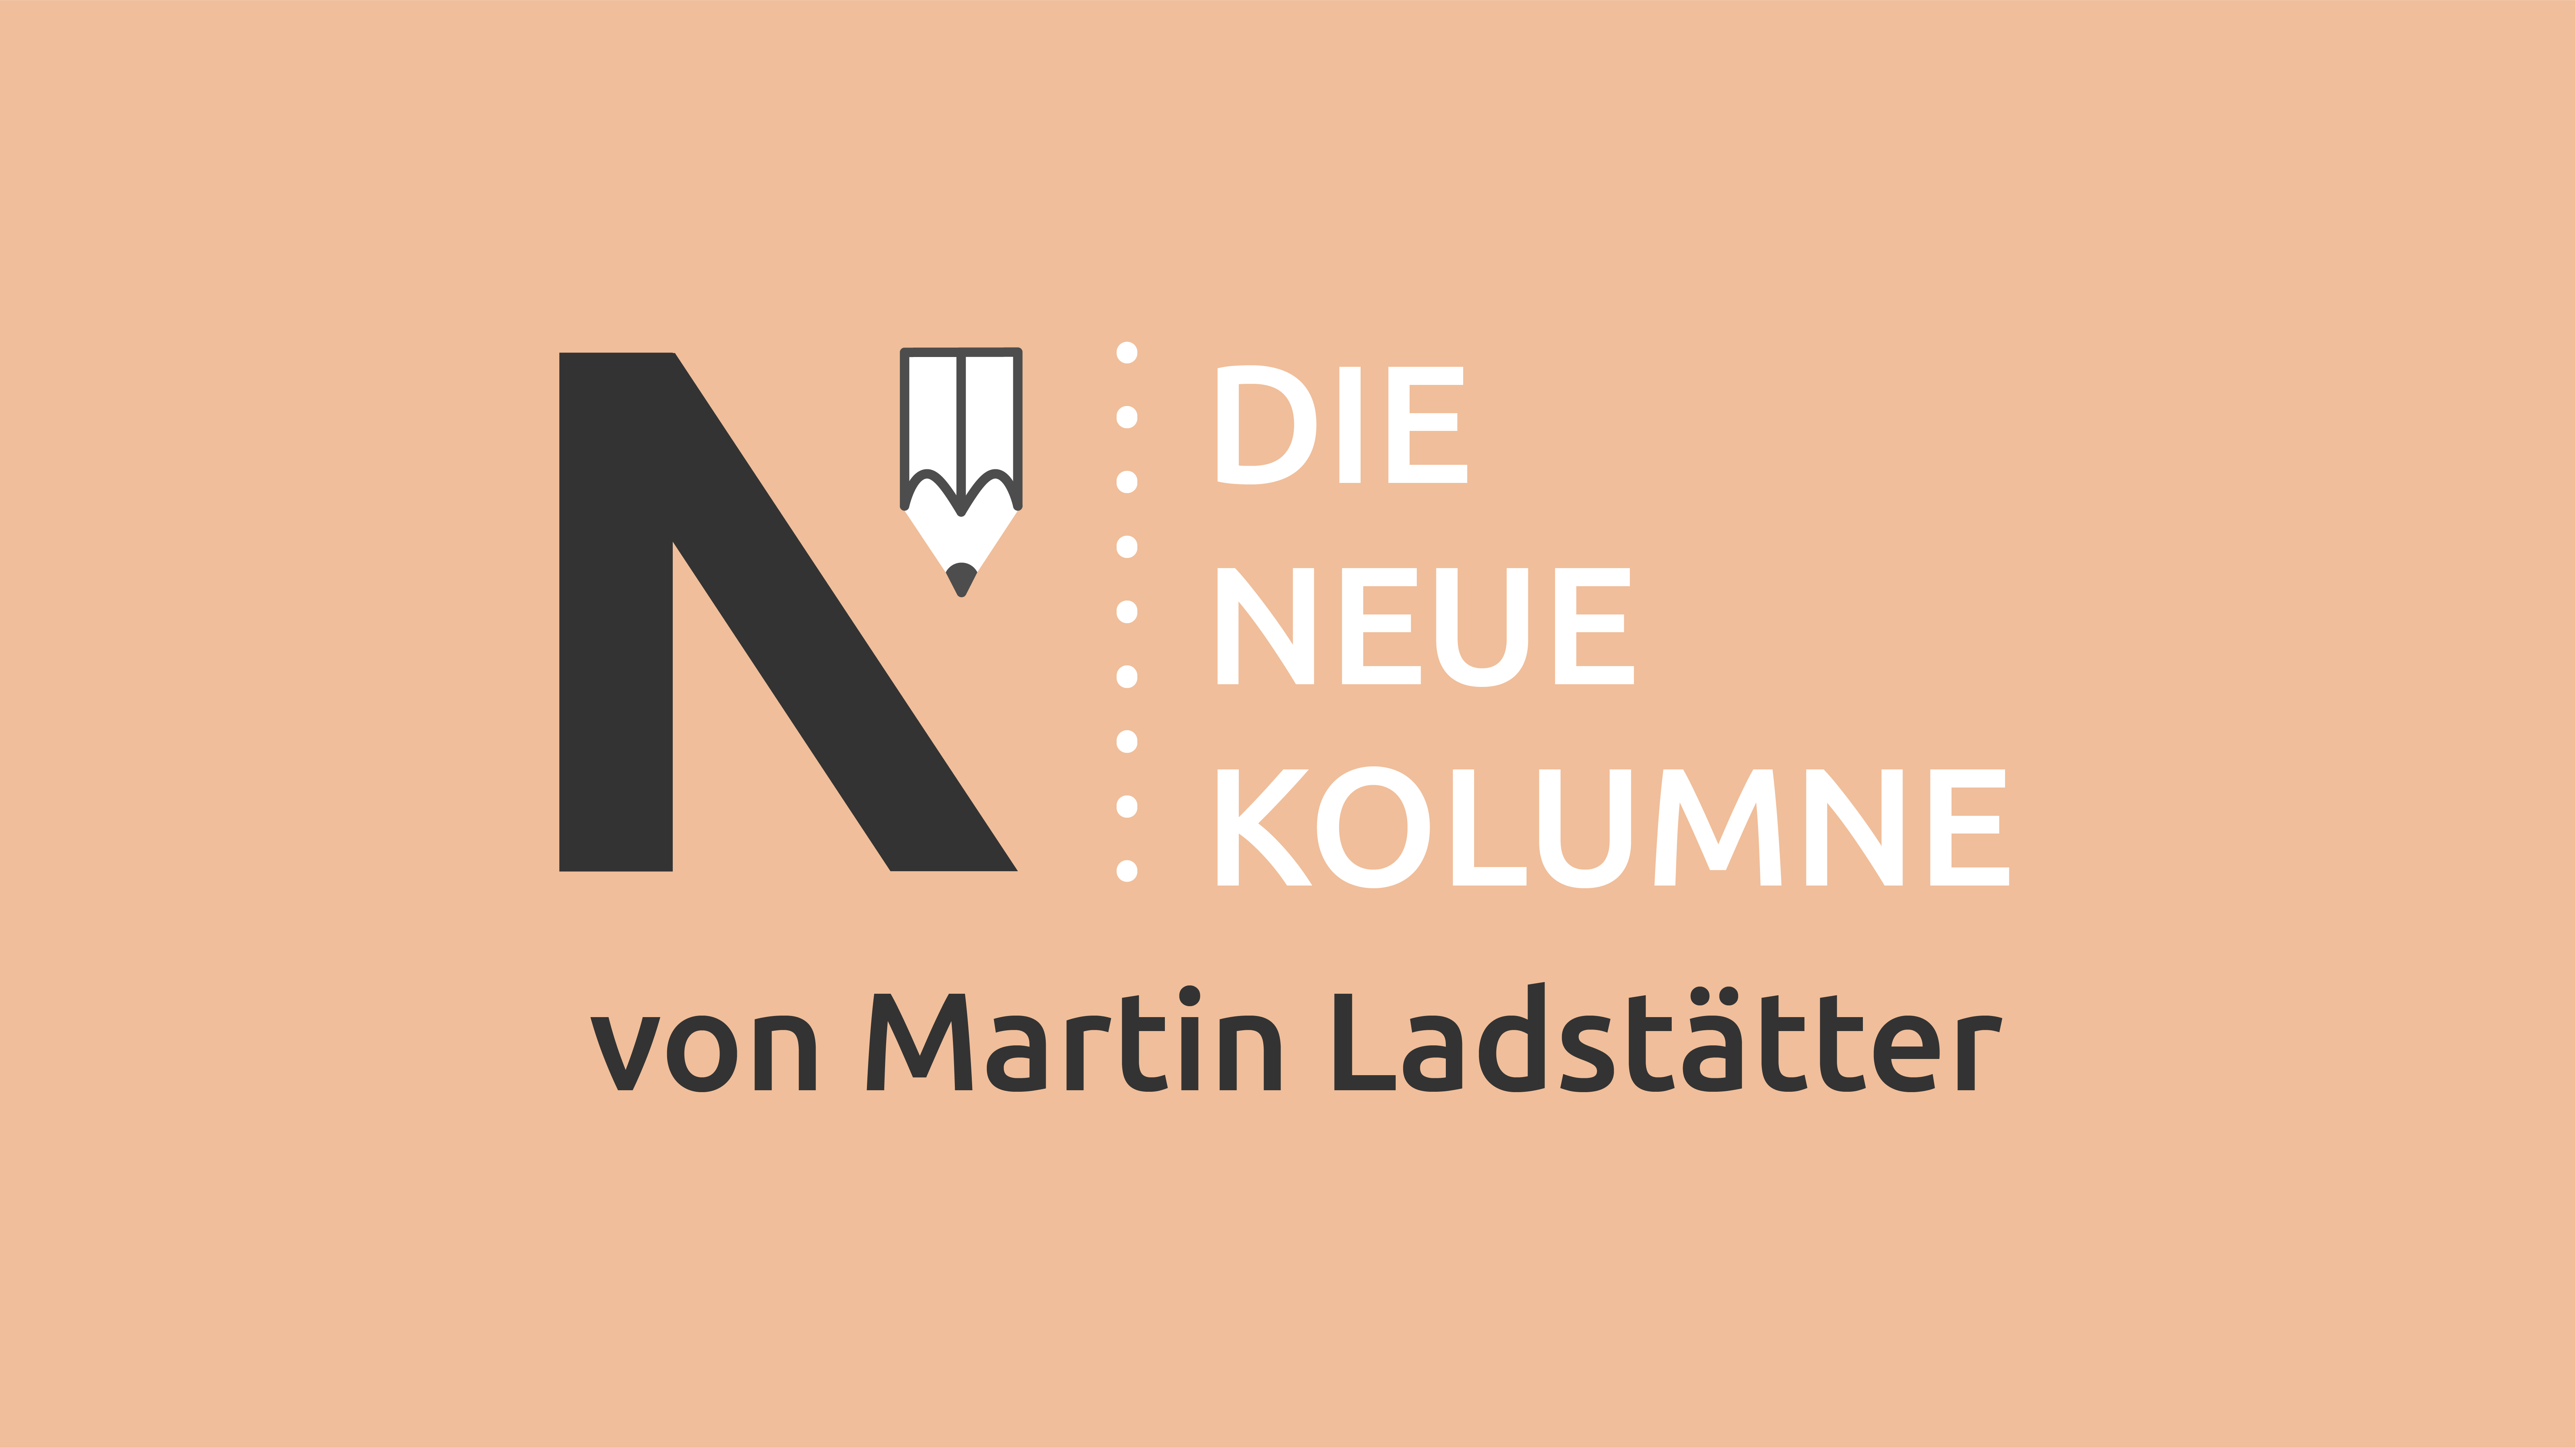 Logo von Die Neue Norm auf puderfarbenden Hintergrund. Rechts steht: Die Neue Kolumne. Unten Steht: von Martin Ladstätter.